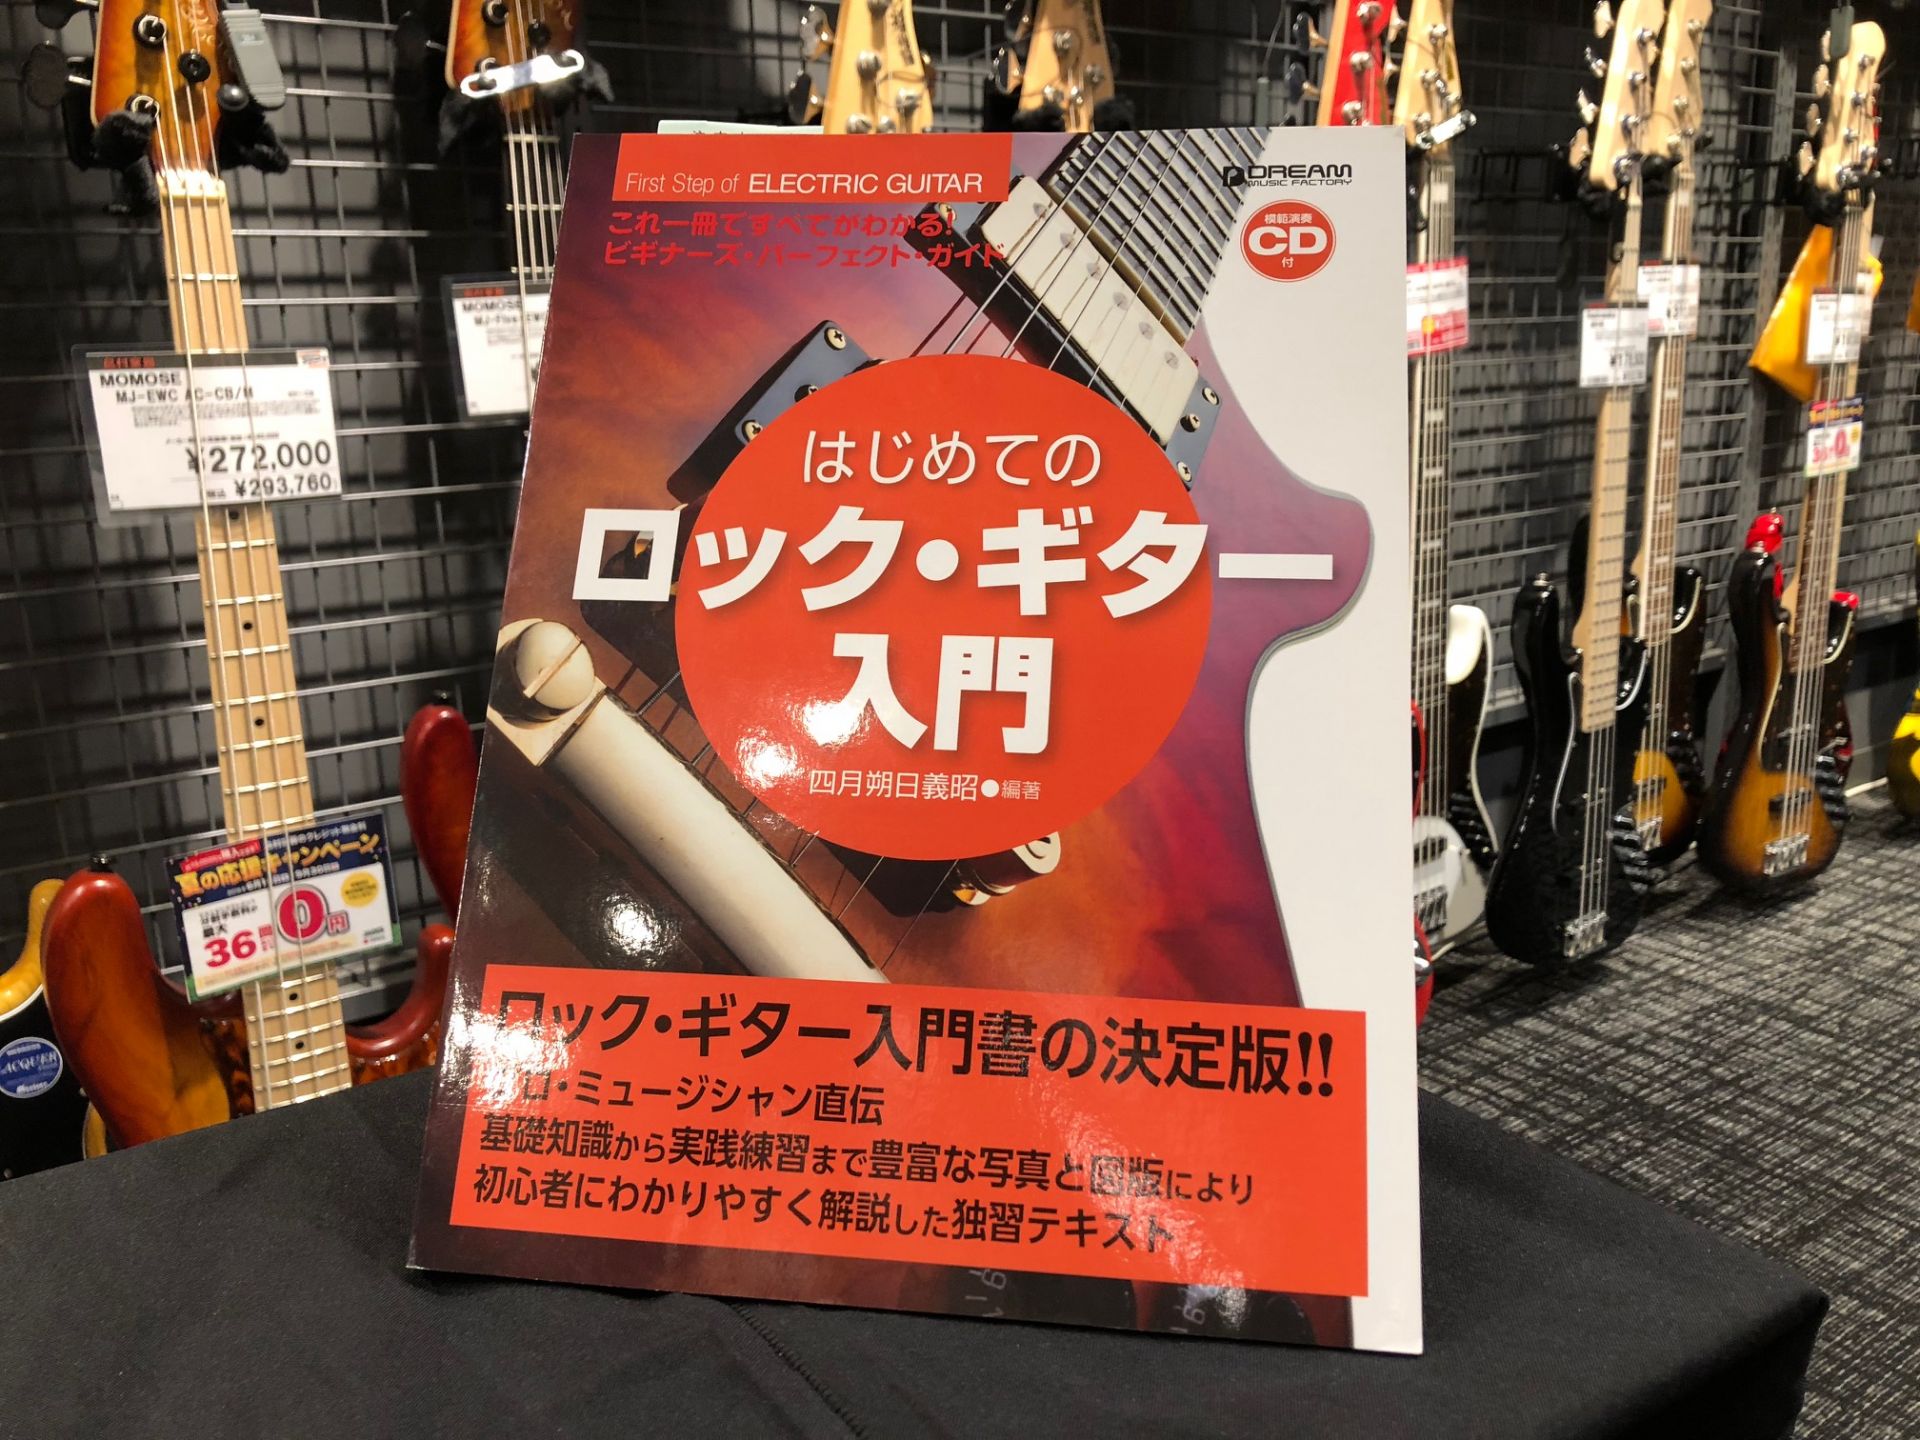 これ一冊ですべてがわかる!! はじめてのロックギター入門 CD付 ビギナーズパーフェクトガイド